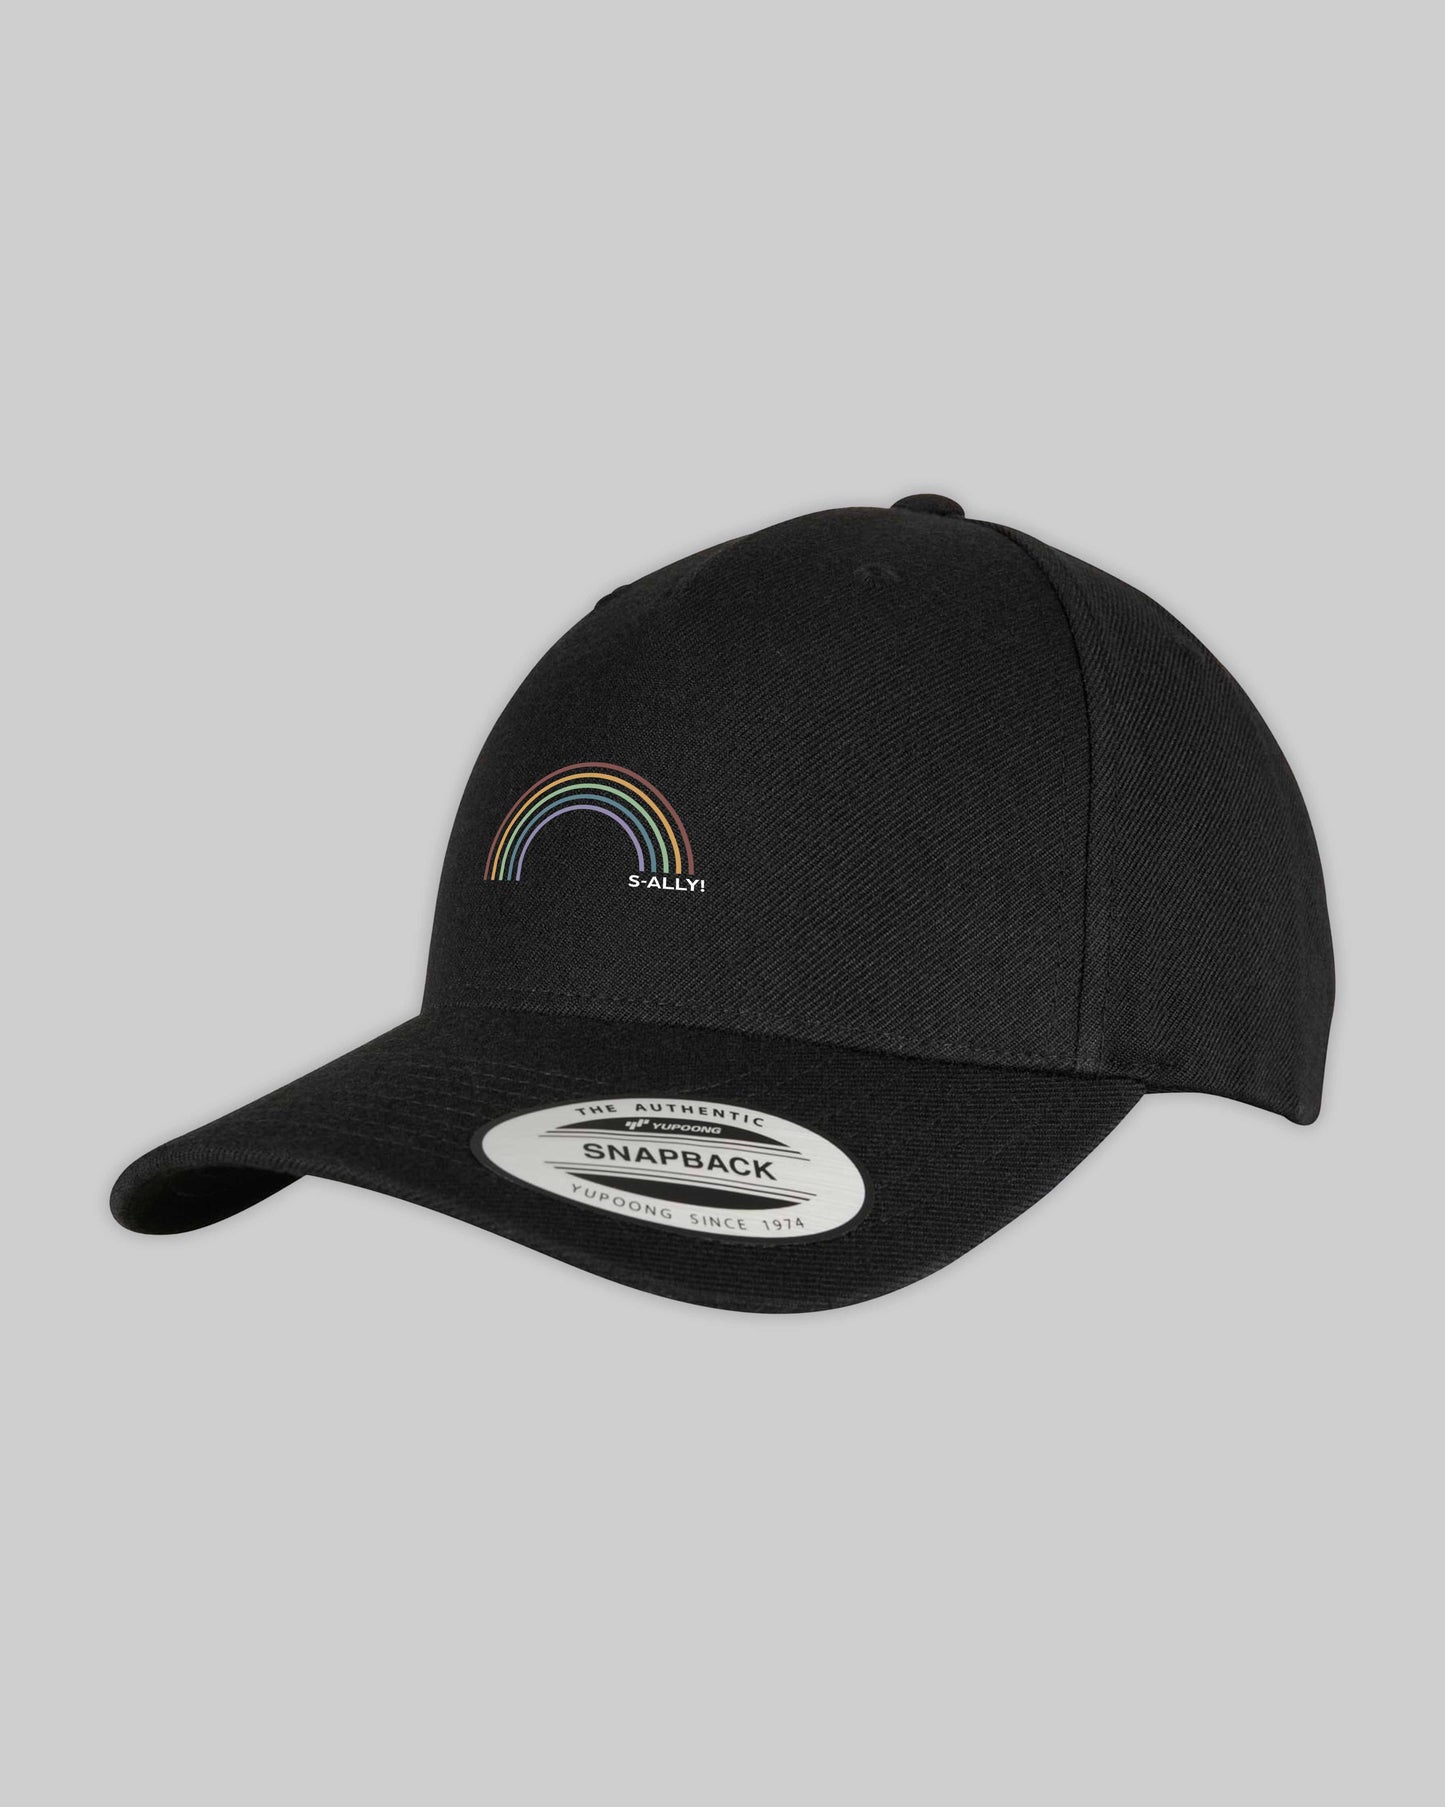 Snapback Cap "s-ally Regenbogen" in 6 verschiedenen Farben